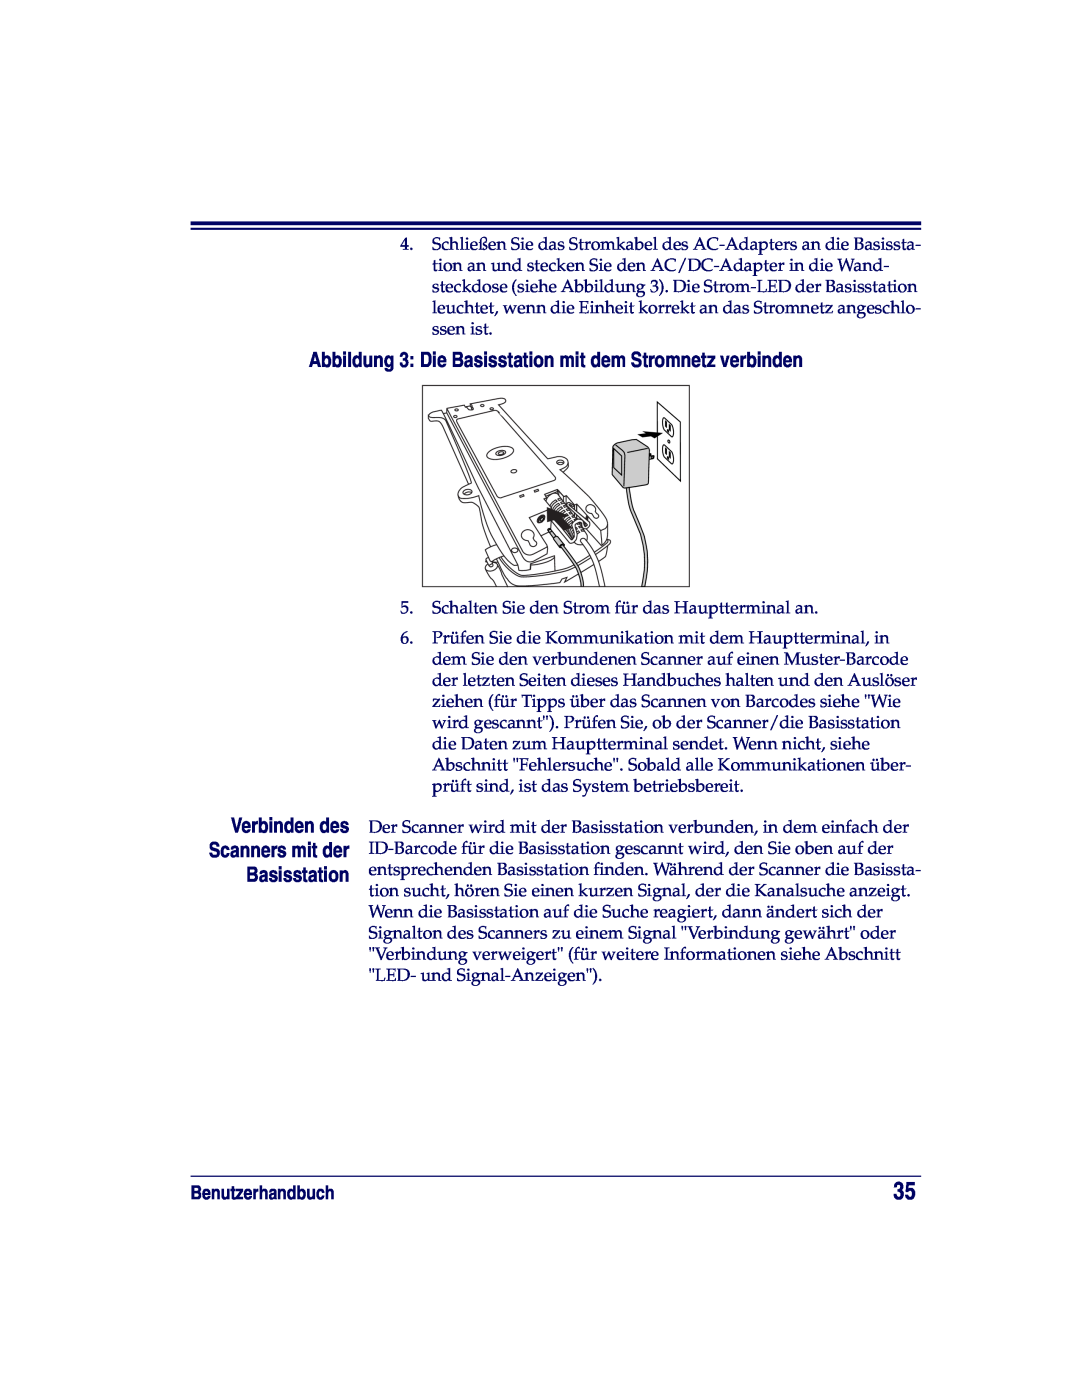 Datalogic Scanning HD, SR, XLR manual Verbinden des Scanners mit der Basisstation, Benutzerhandbuch 